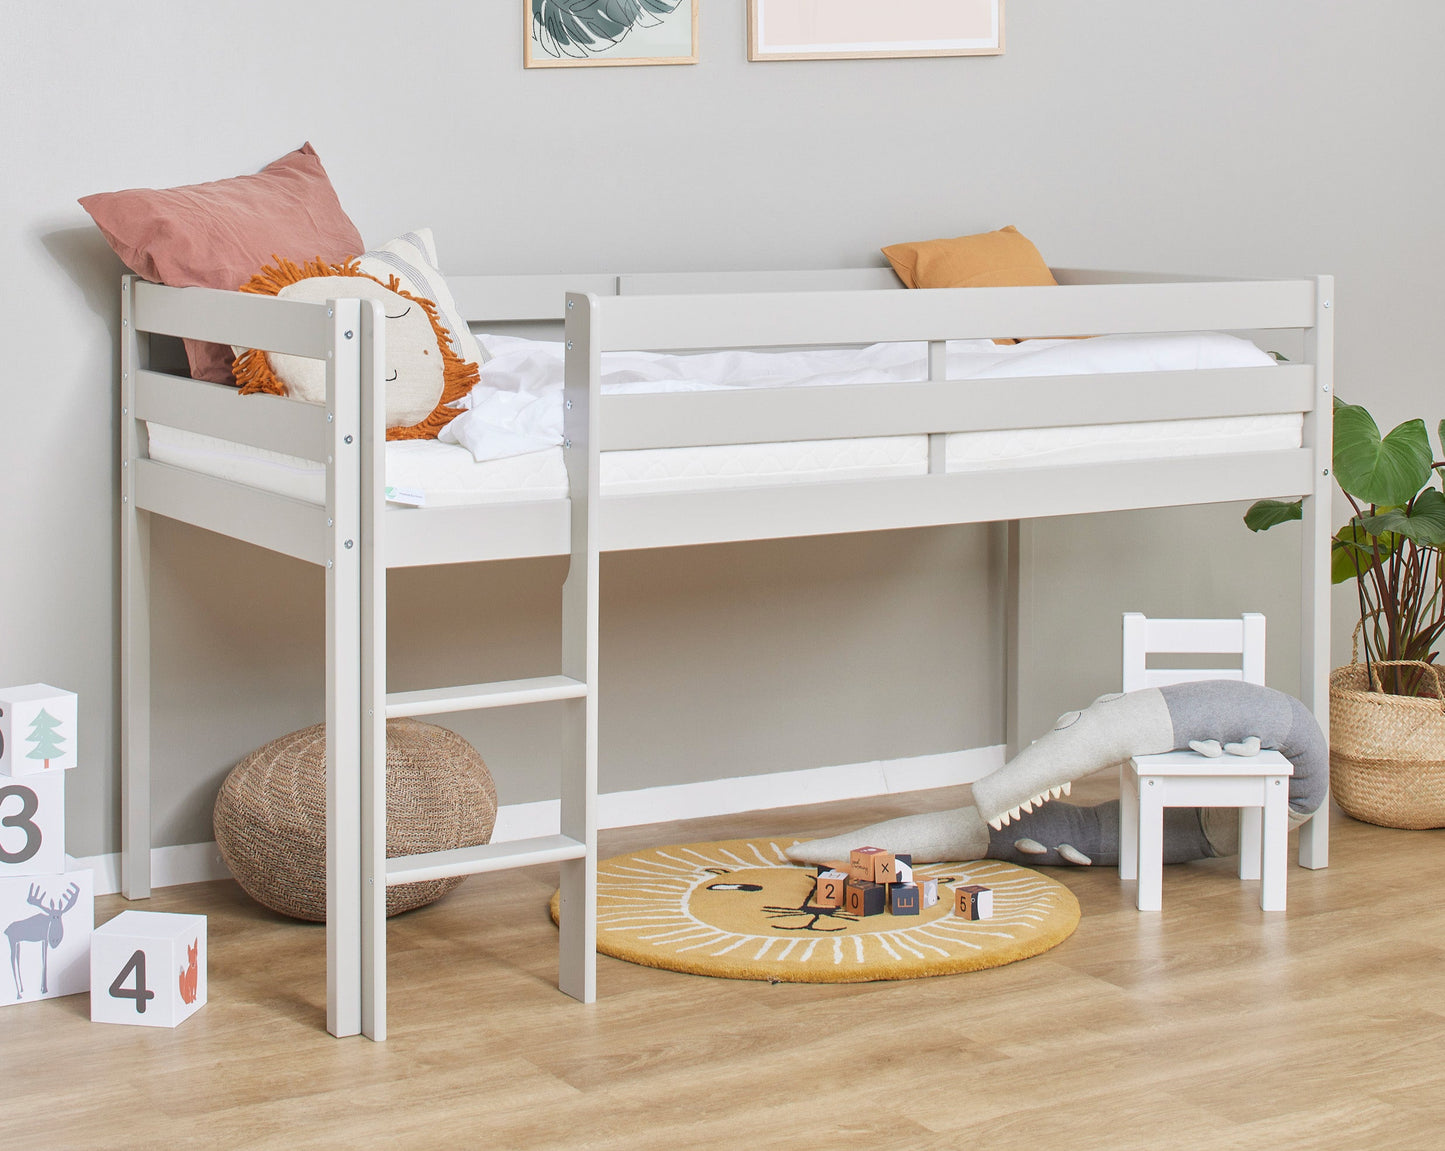 ECO Comfort - Half high bed - 90x200 cm